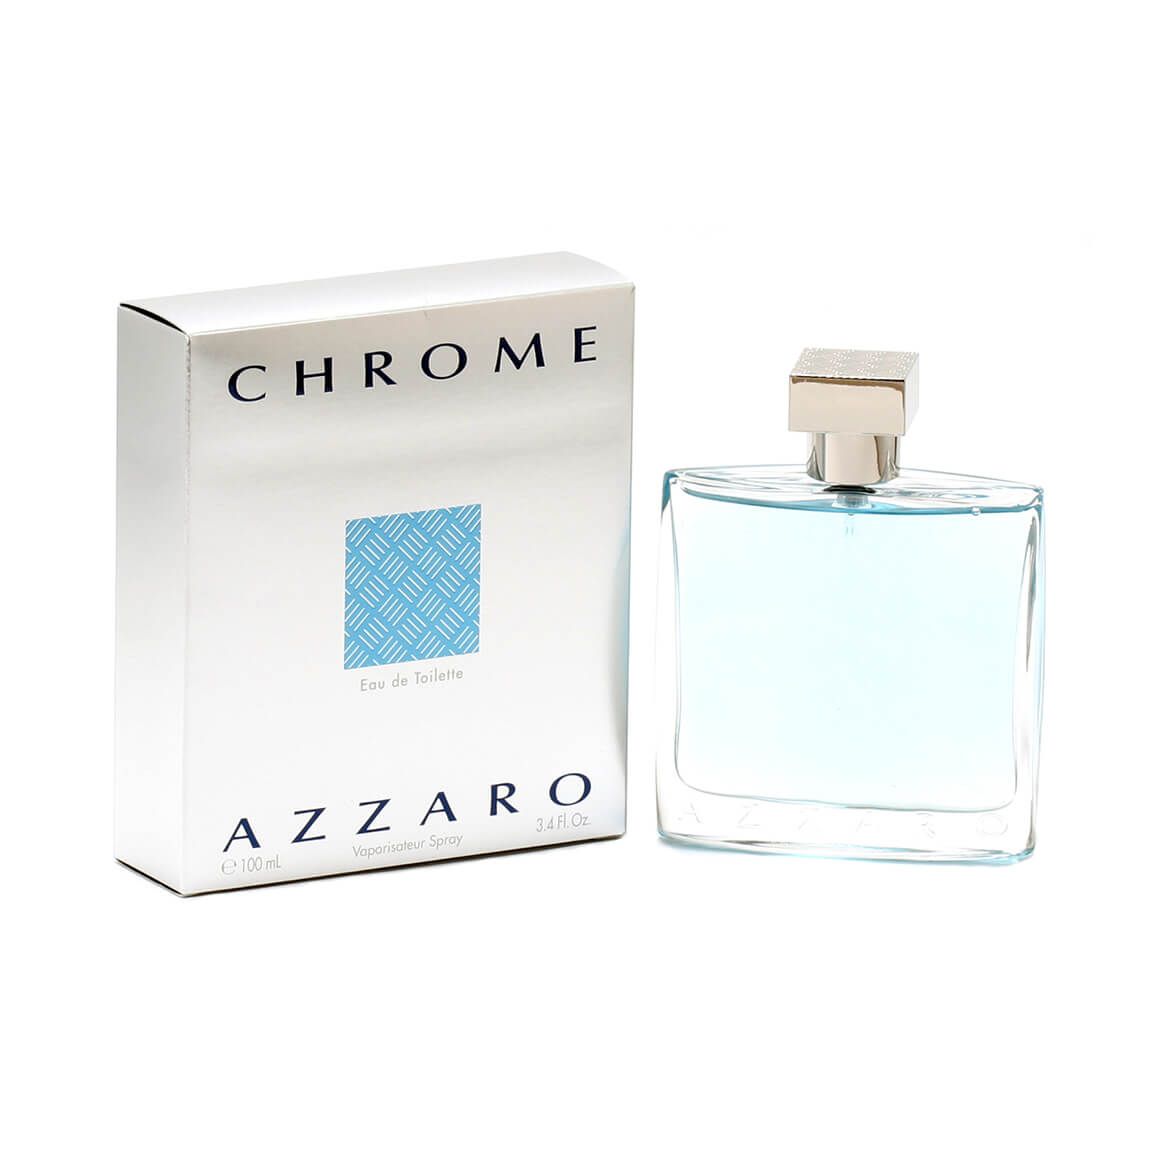 Azzaro Chrome for Men EDT - 3.4oz + '-' + 357276